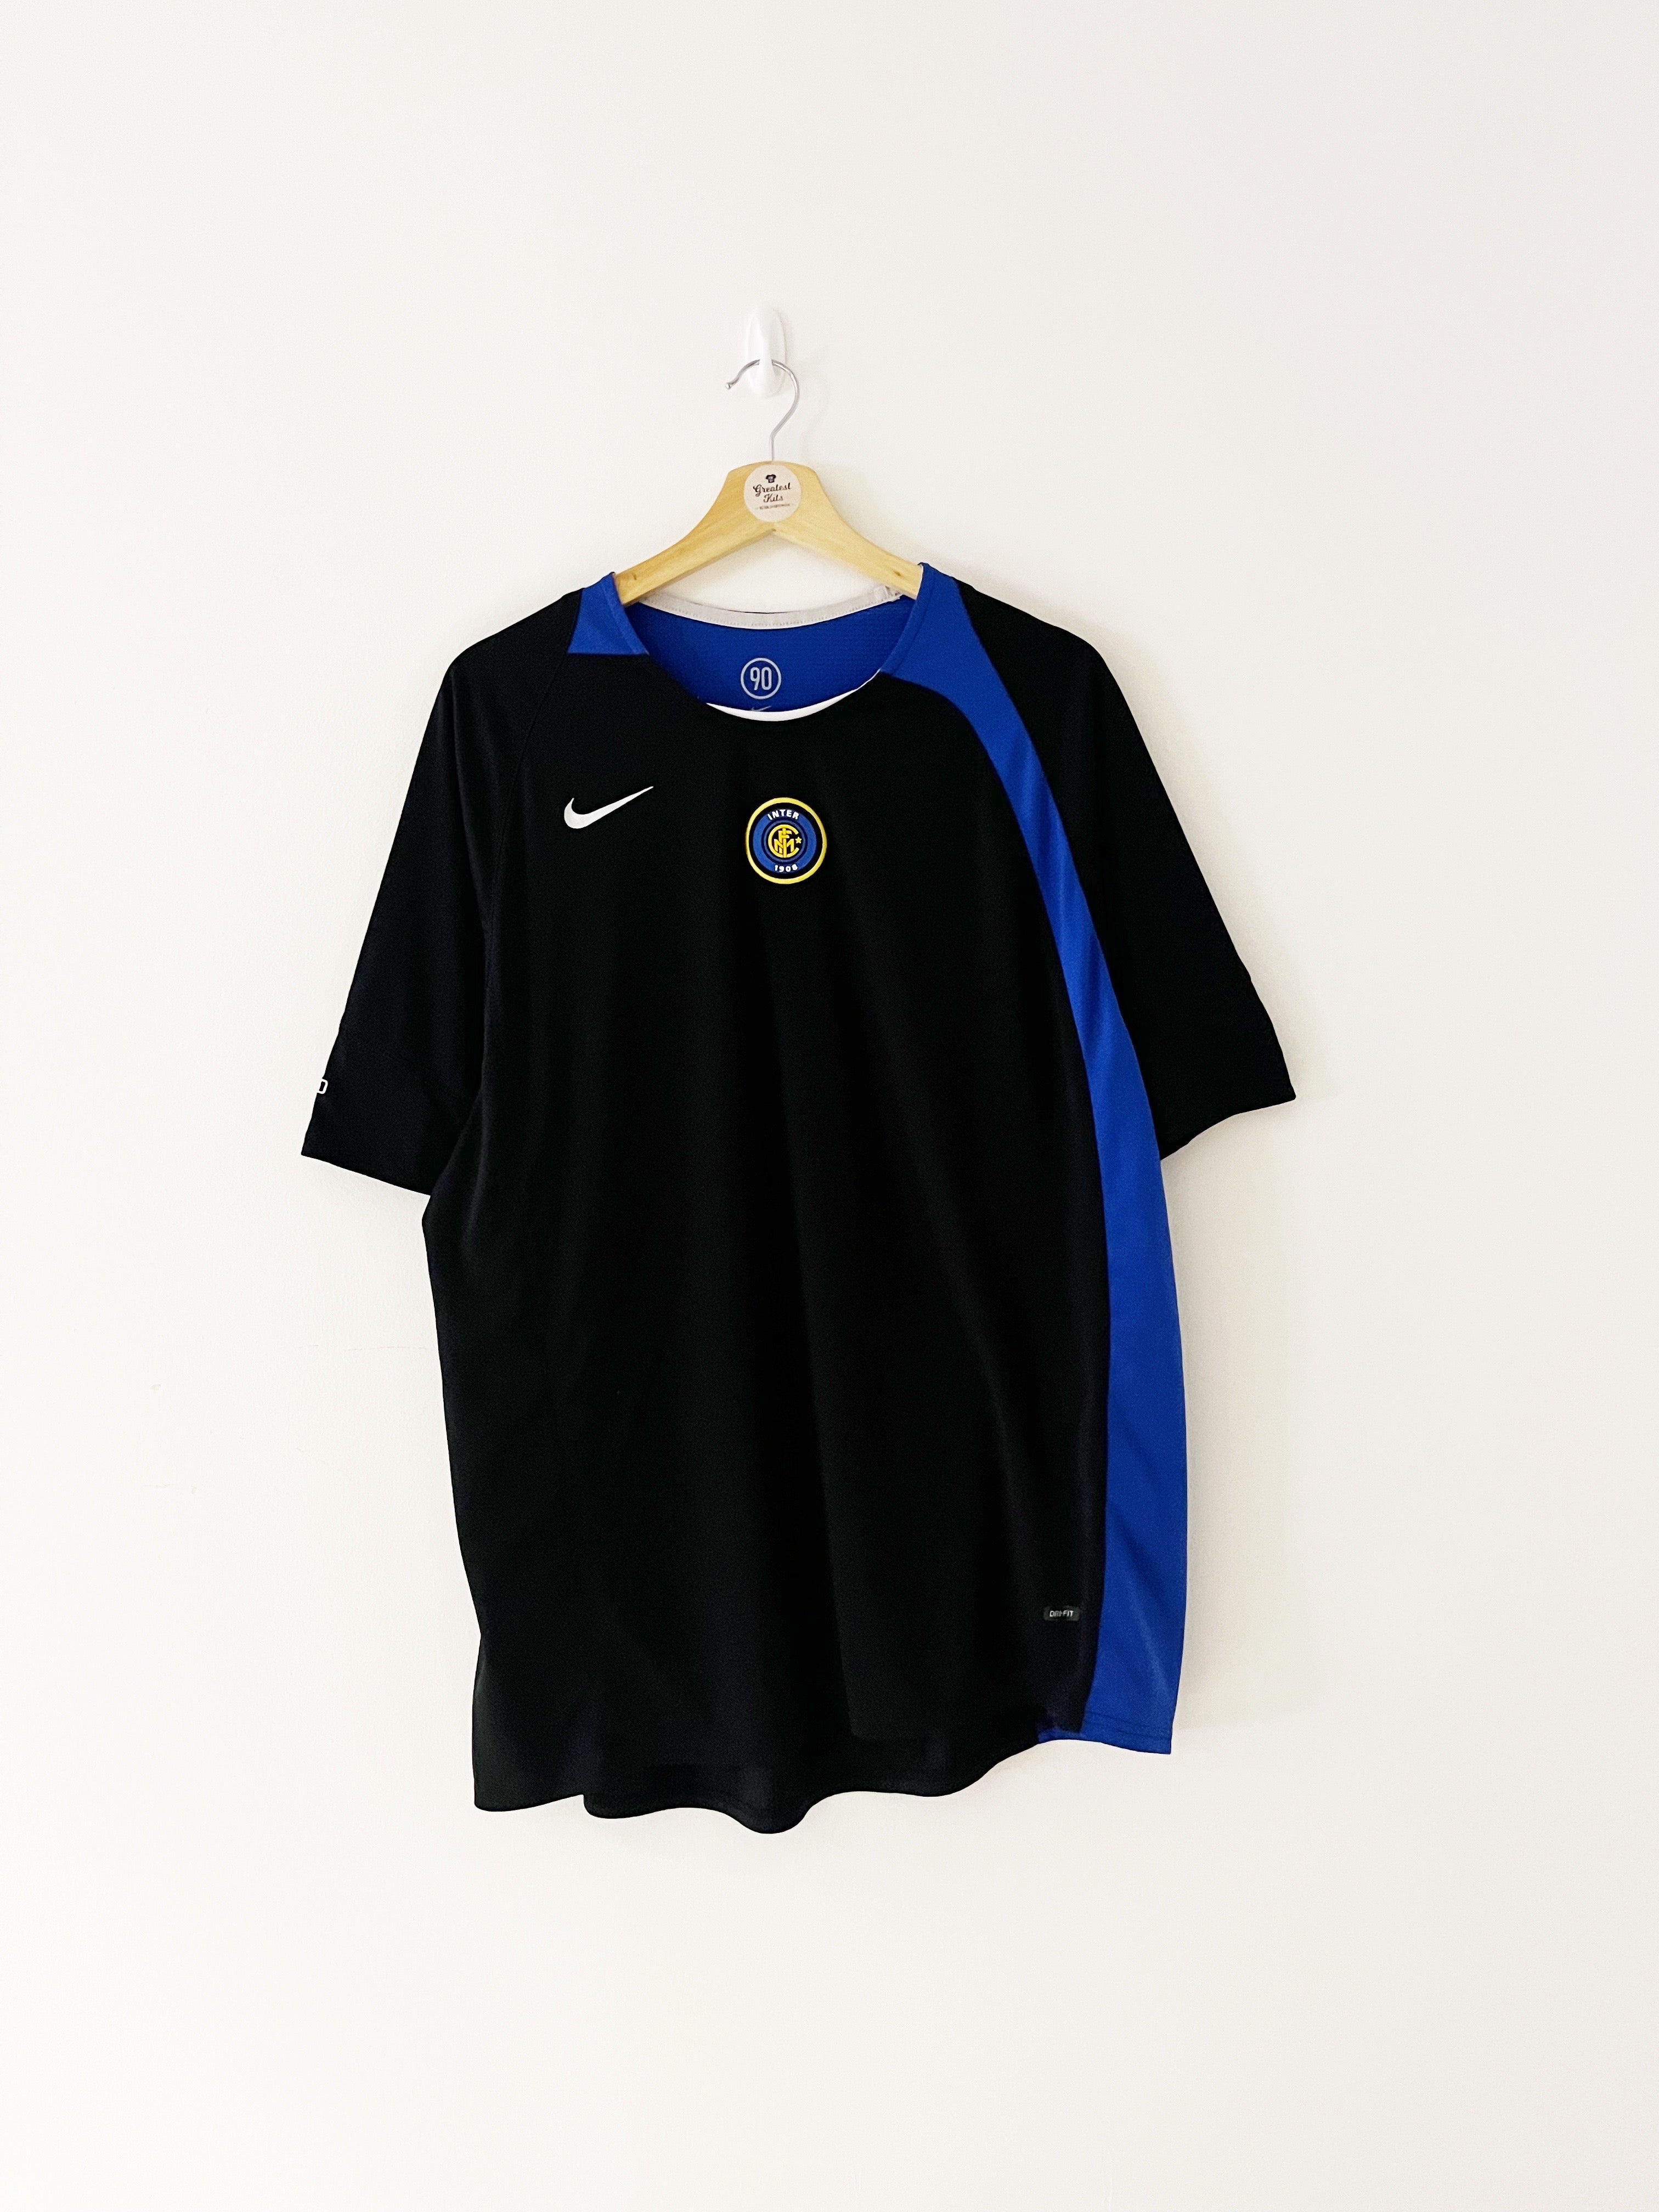 2004/05 Inter Milan Training Shirt (XL) 6.5/10